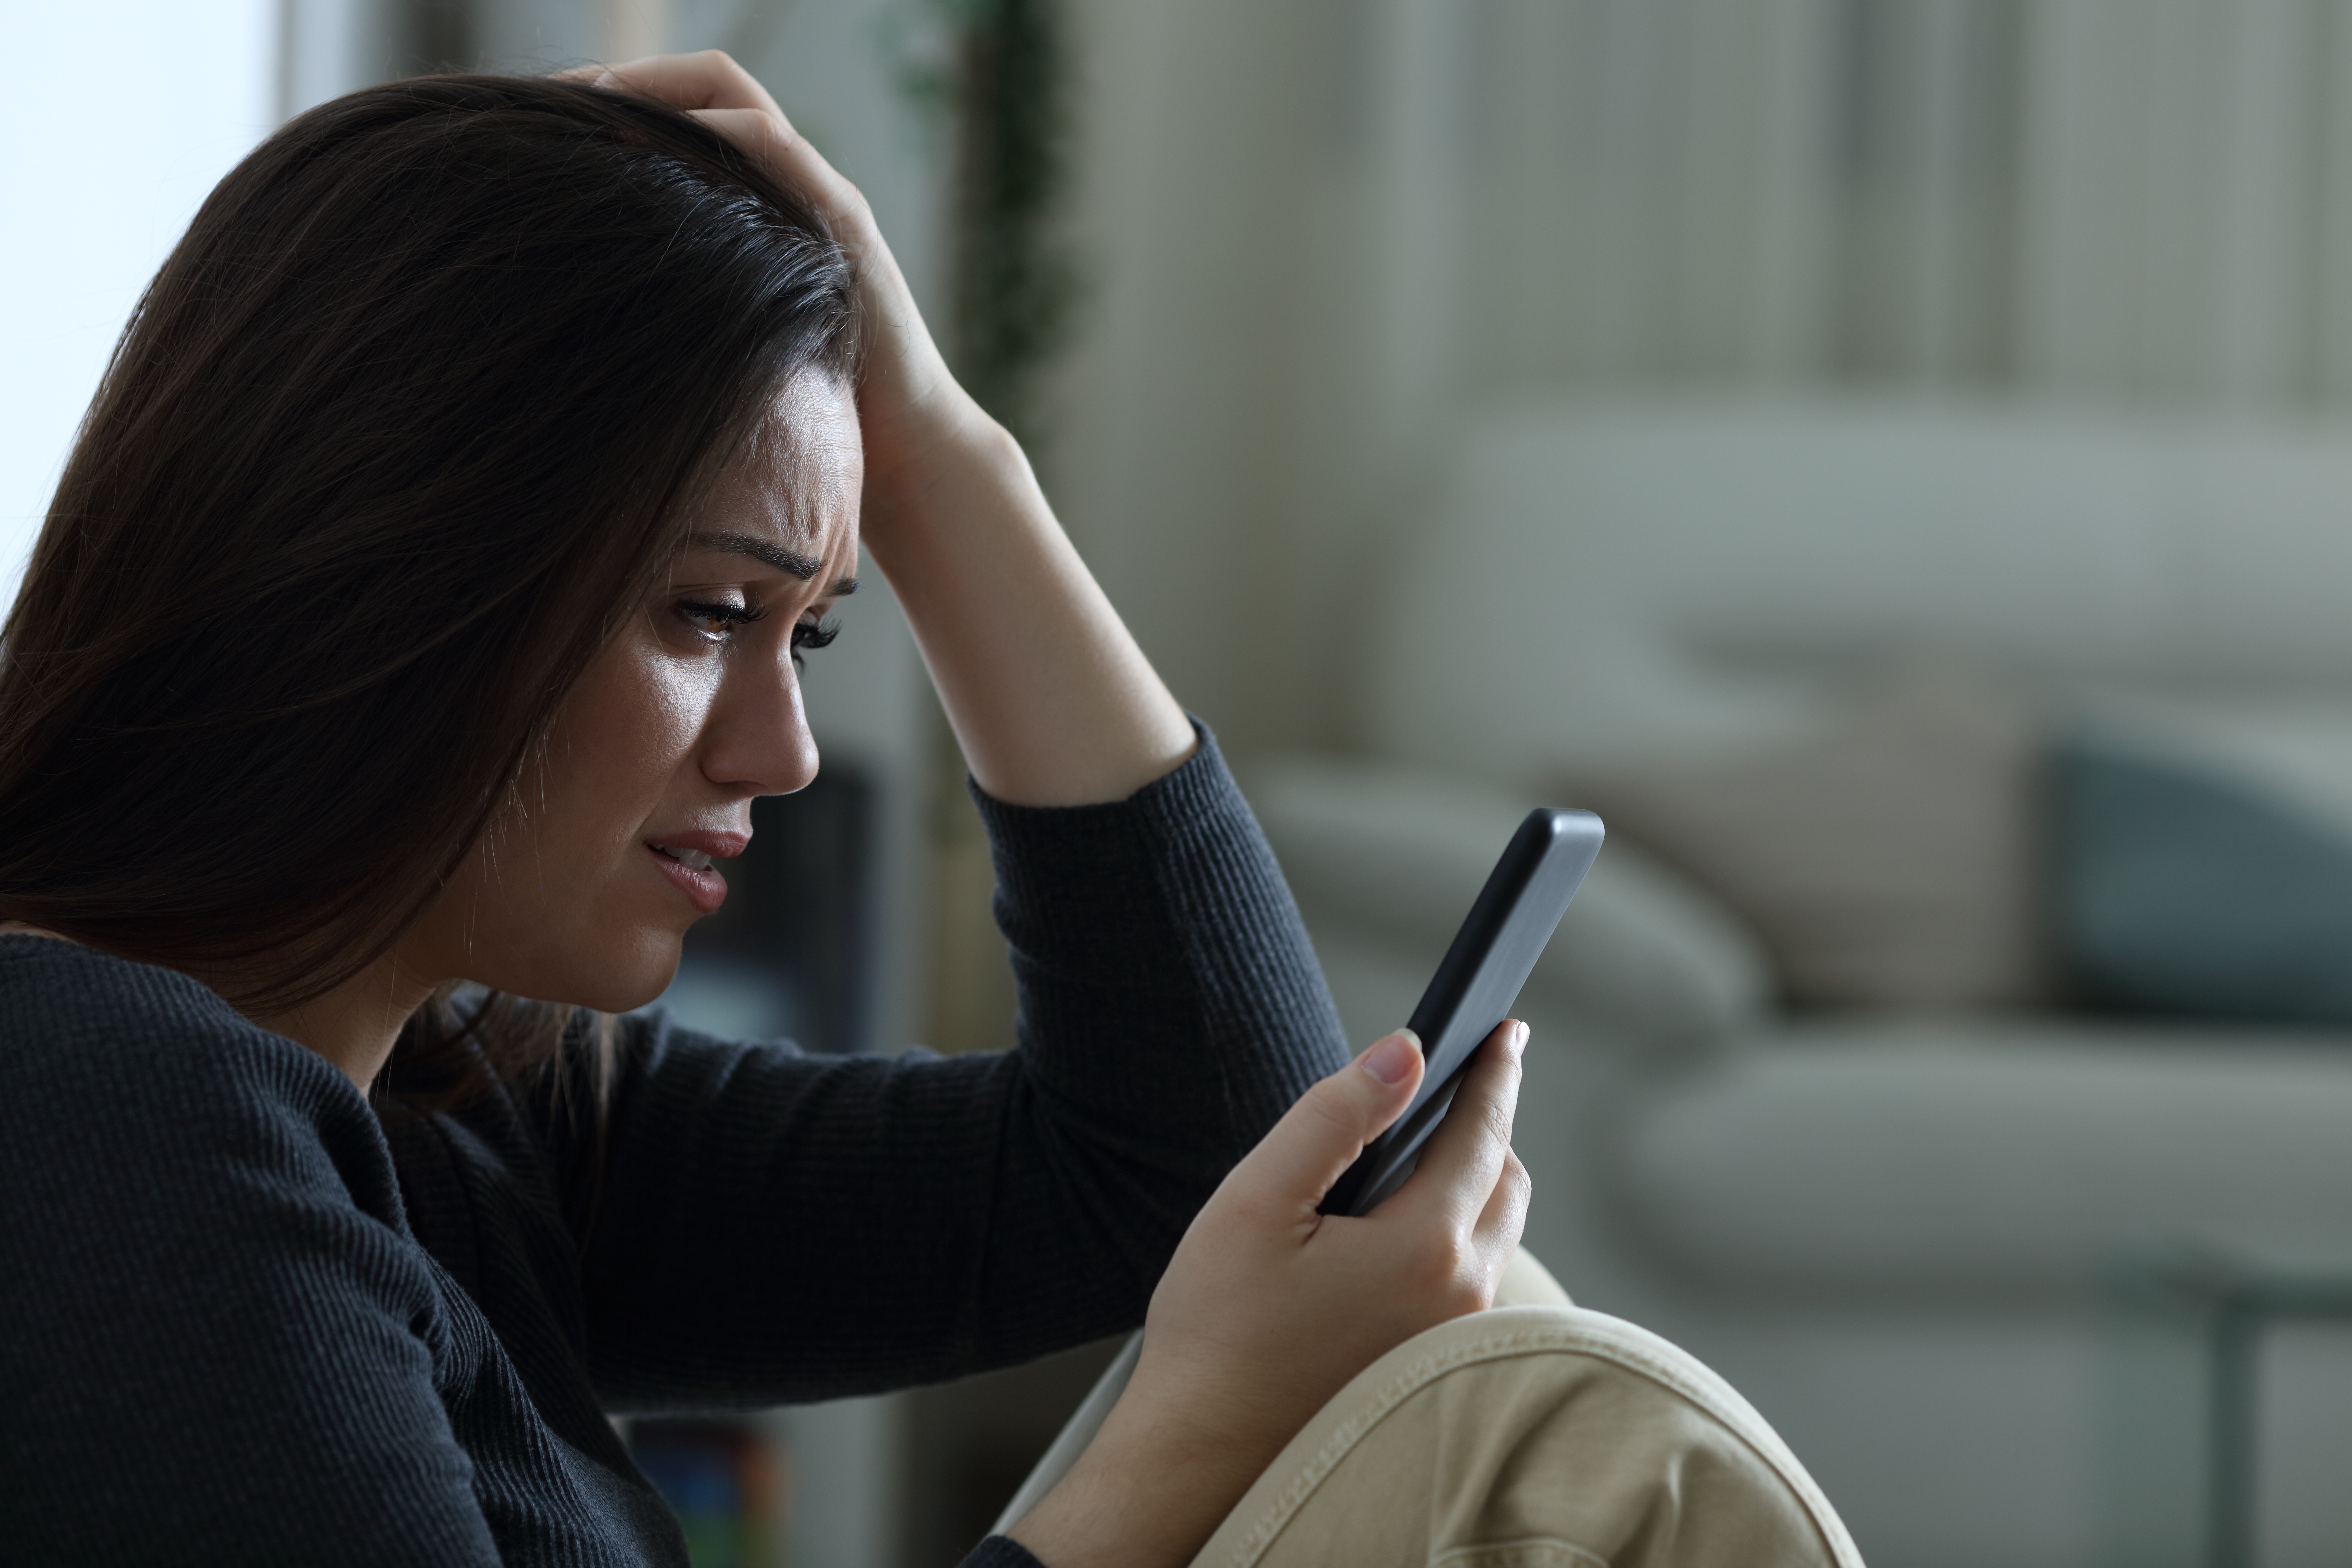 Une femme à l'air triste tout en regardant son téléphone | Source : Shutterstock